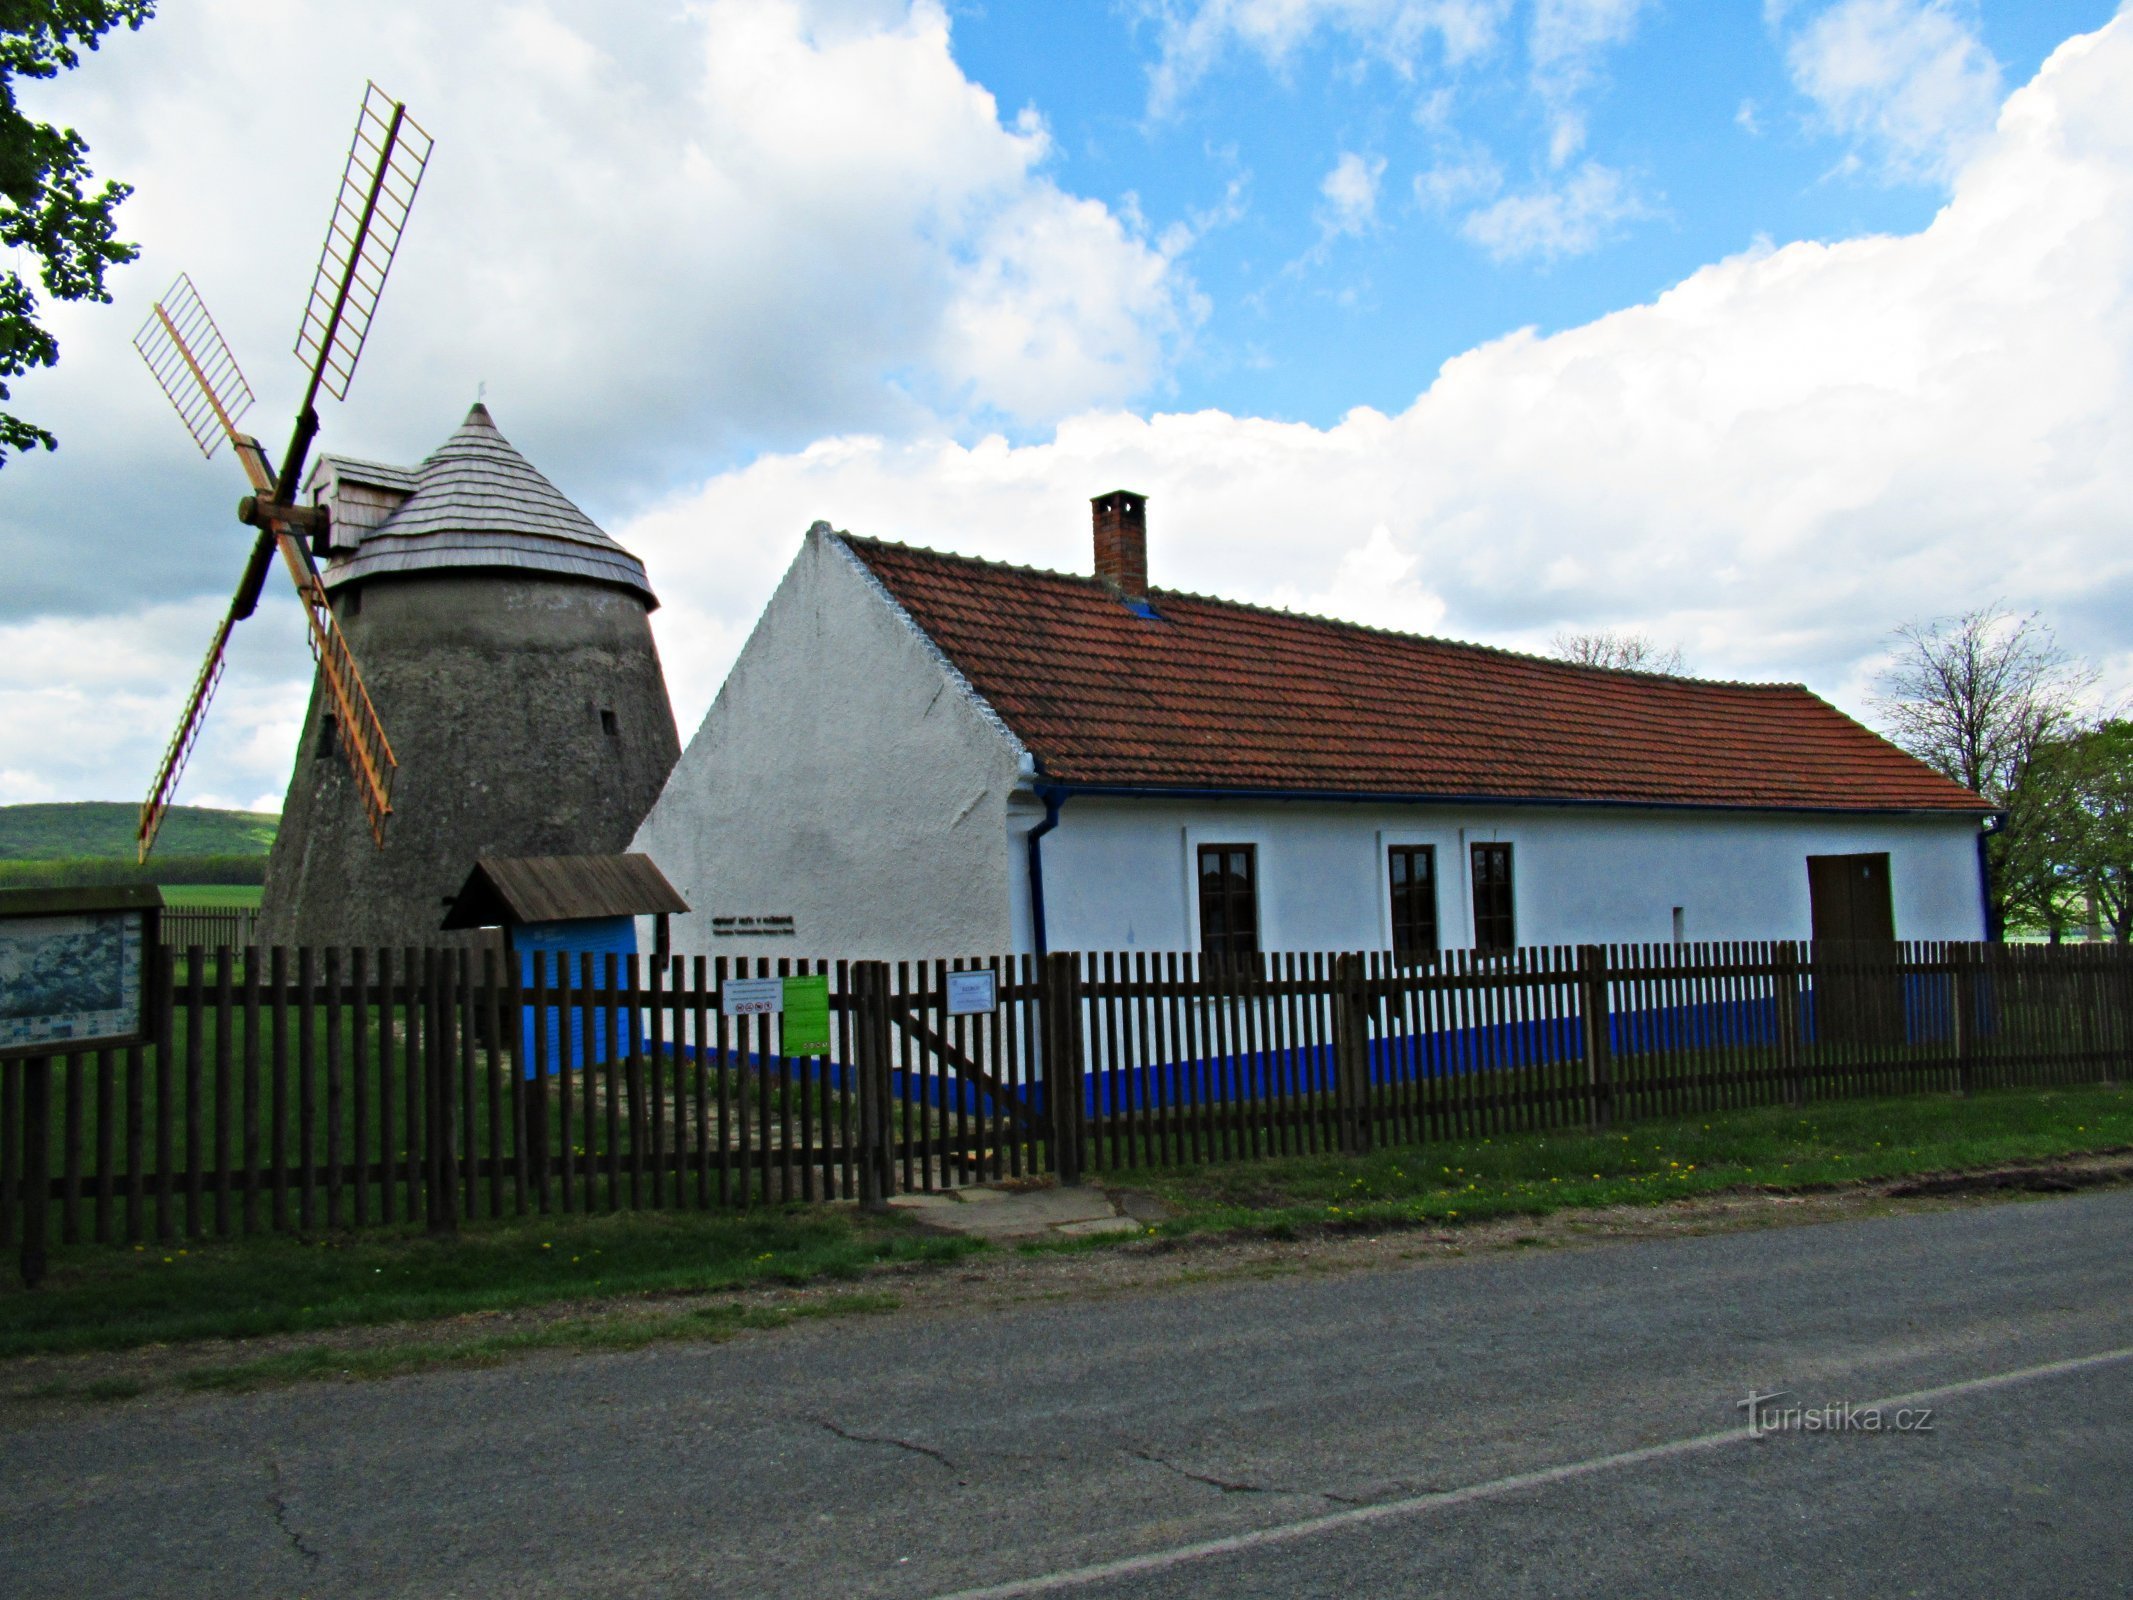 Район вітряка над селом Кужелов на Словаччині